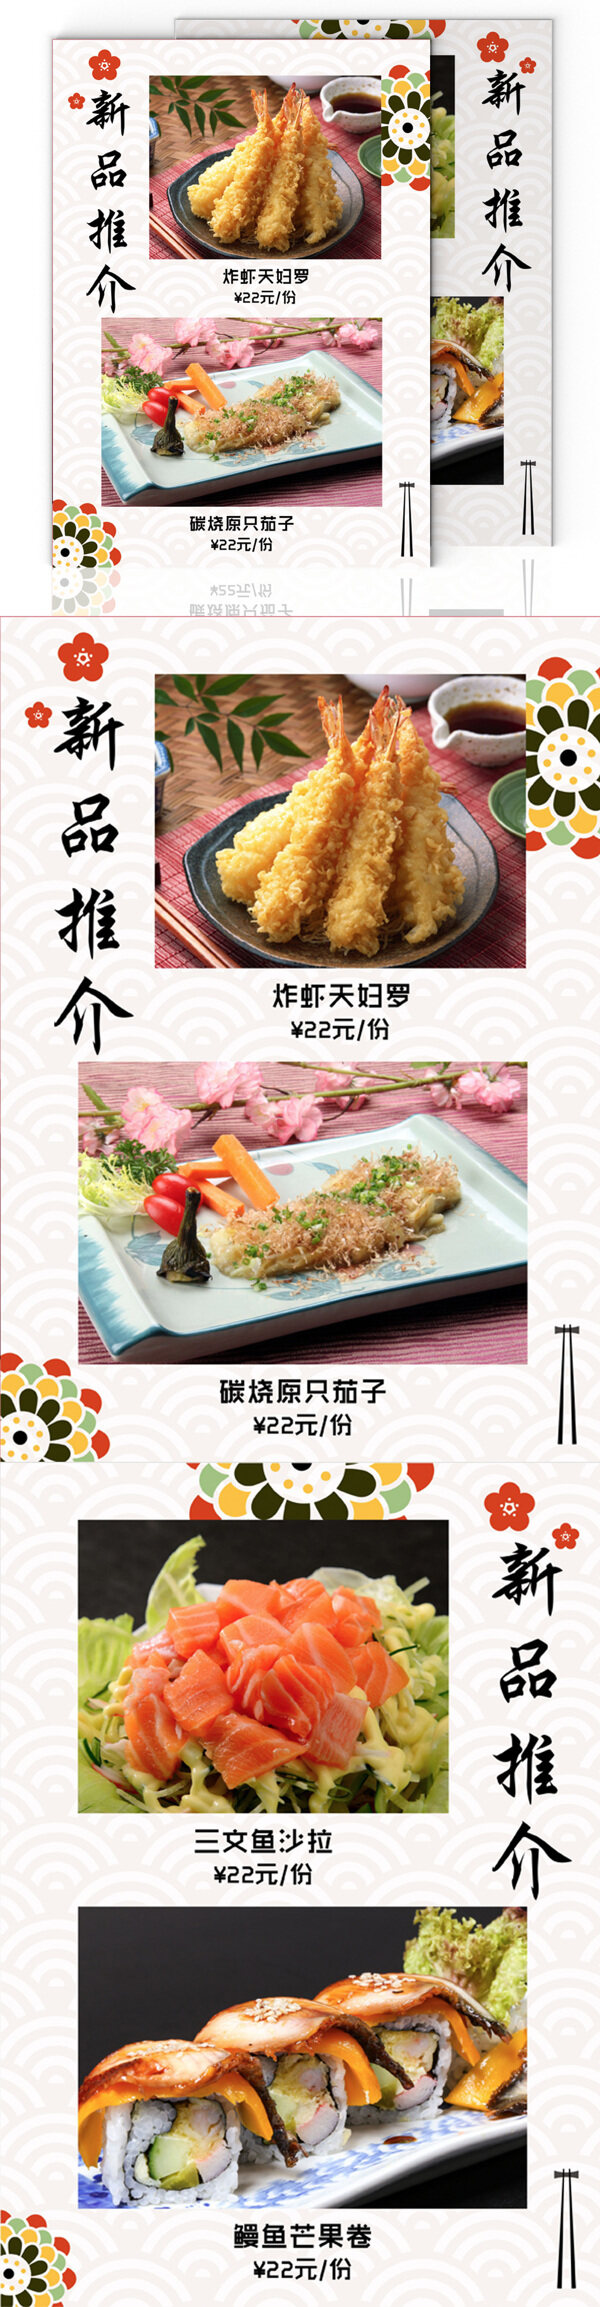 日式餐厅简约菜谱